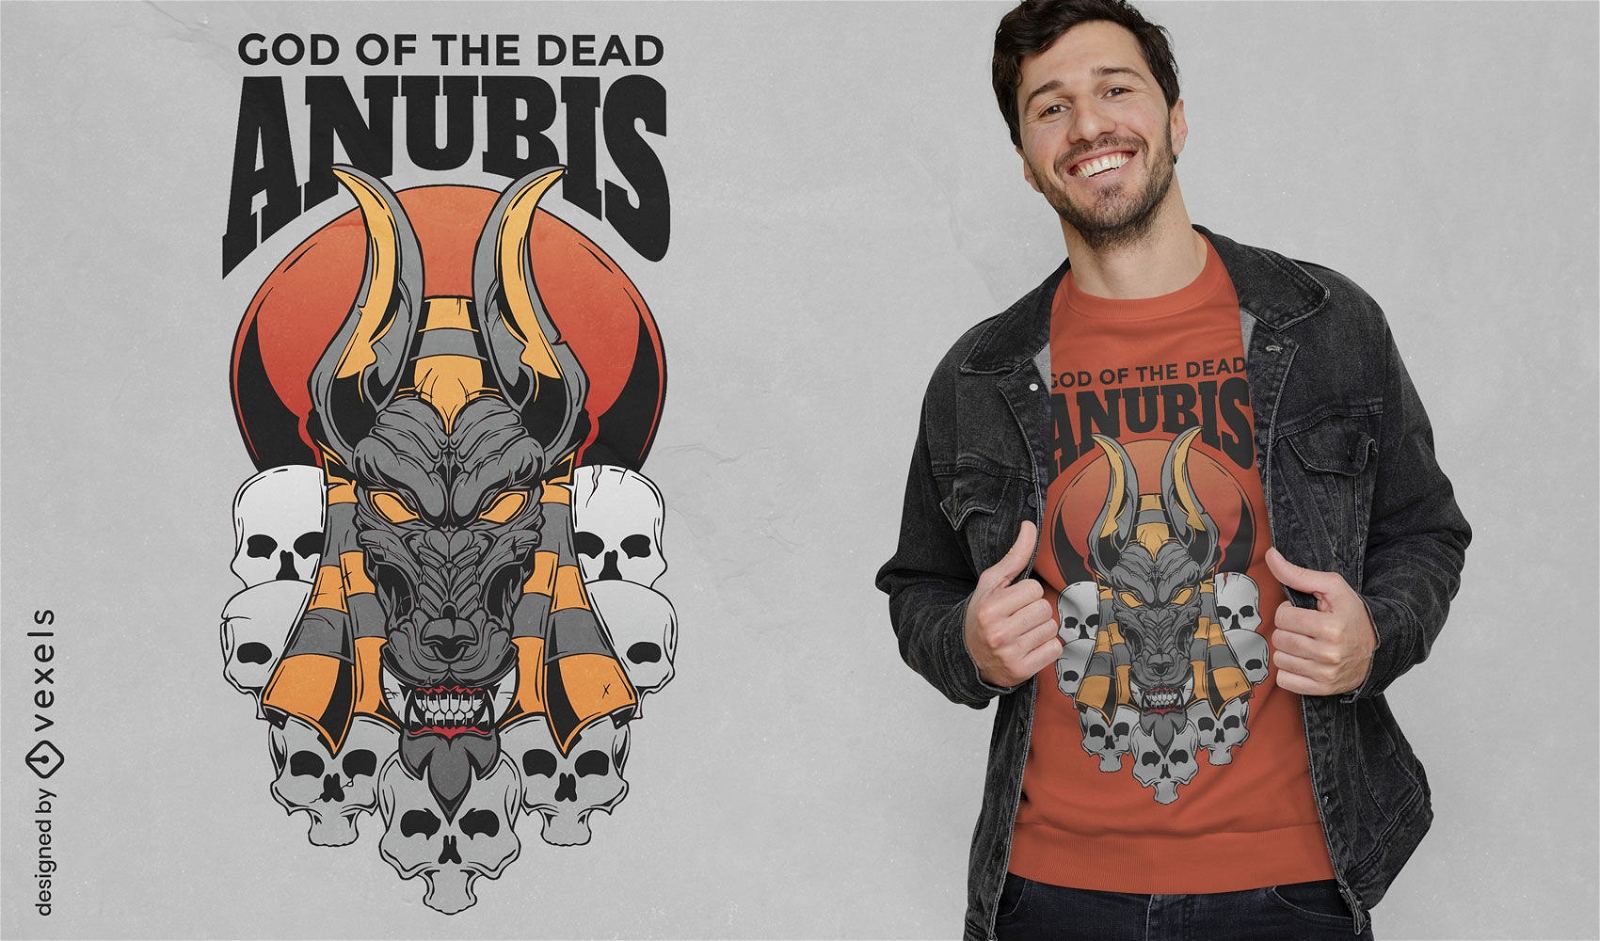 Anubis and skulls t-shirt design